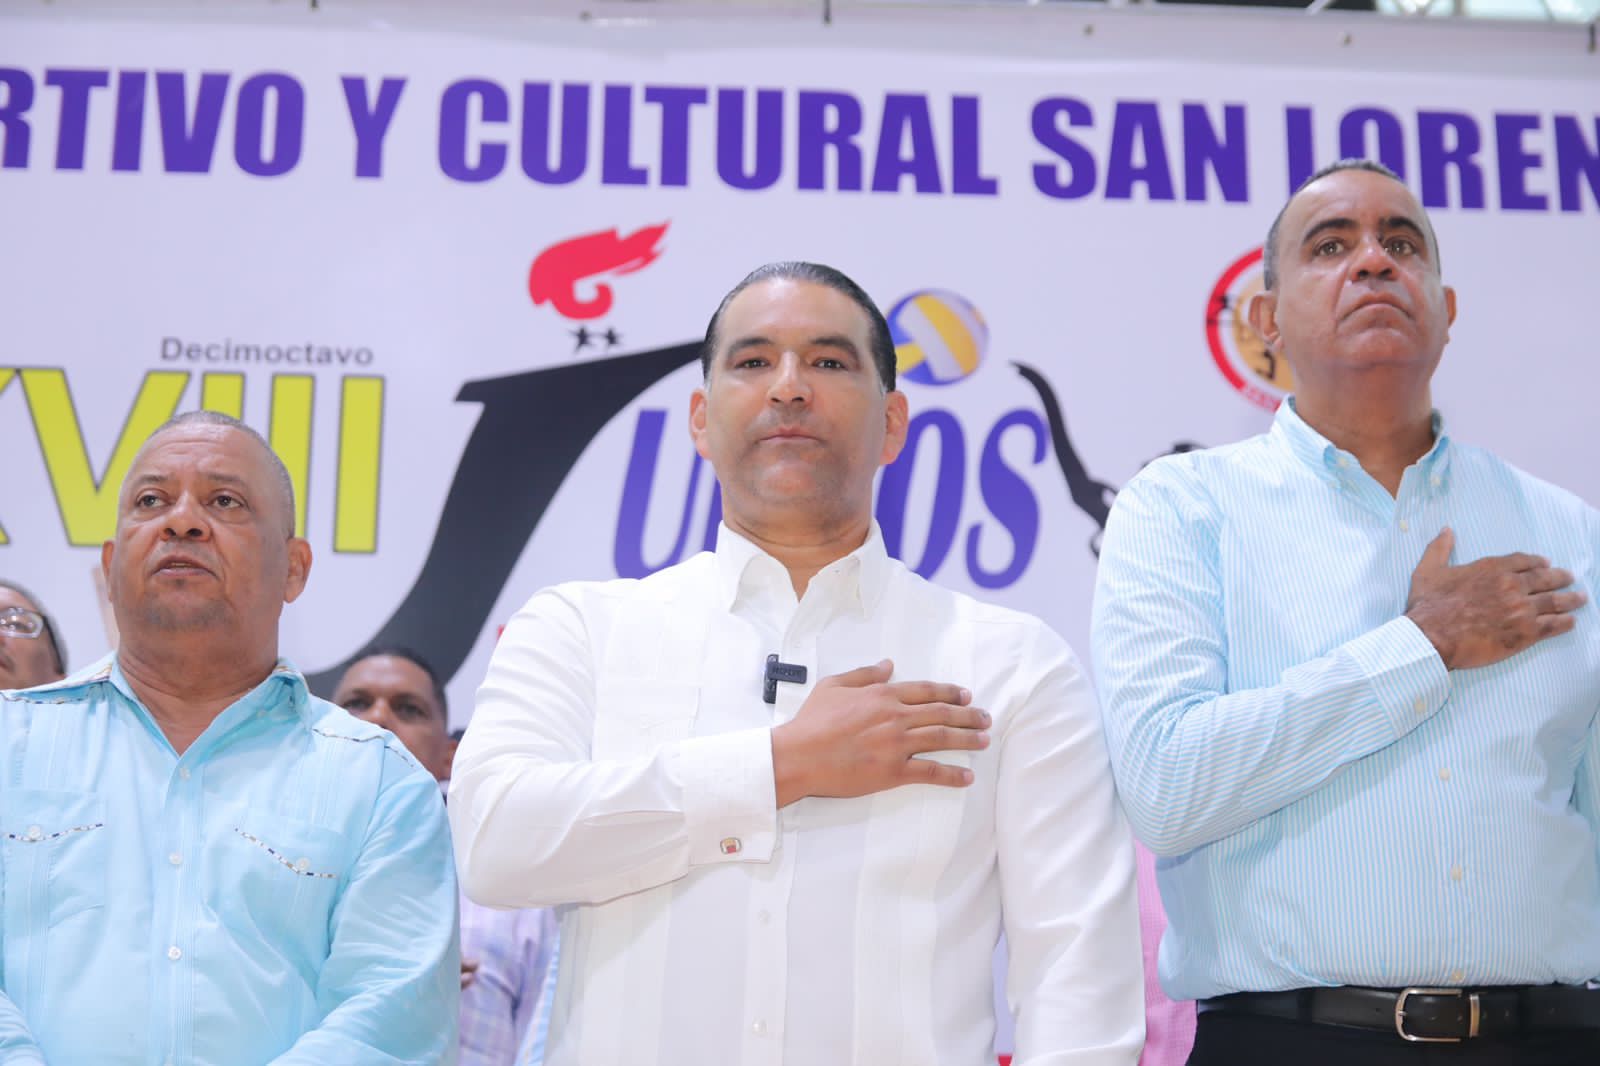 Luis Alberto expresa consternación por tragedia en San Cristóbal